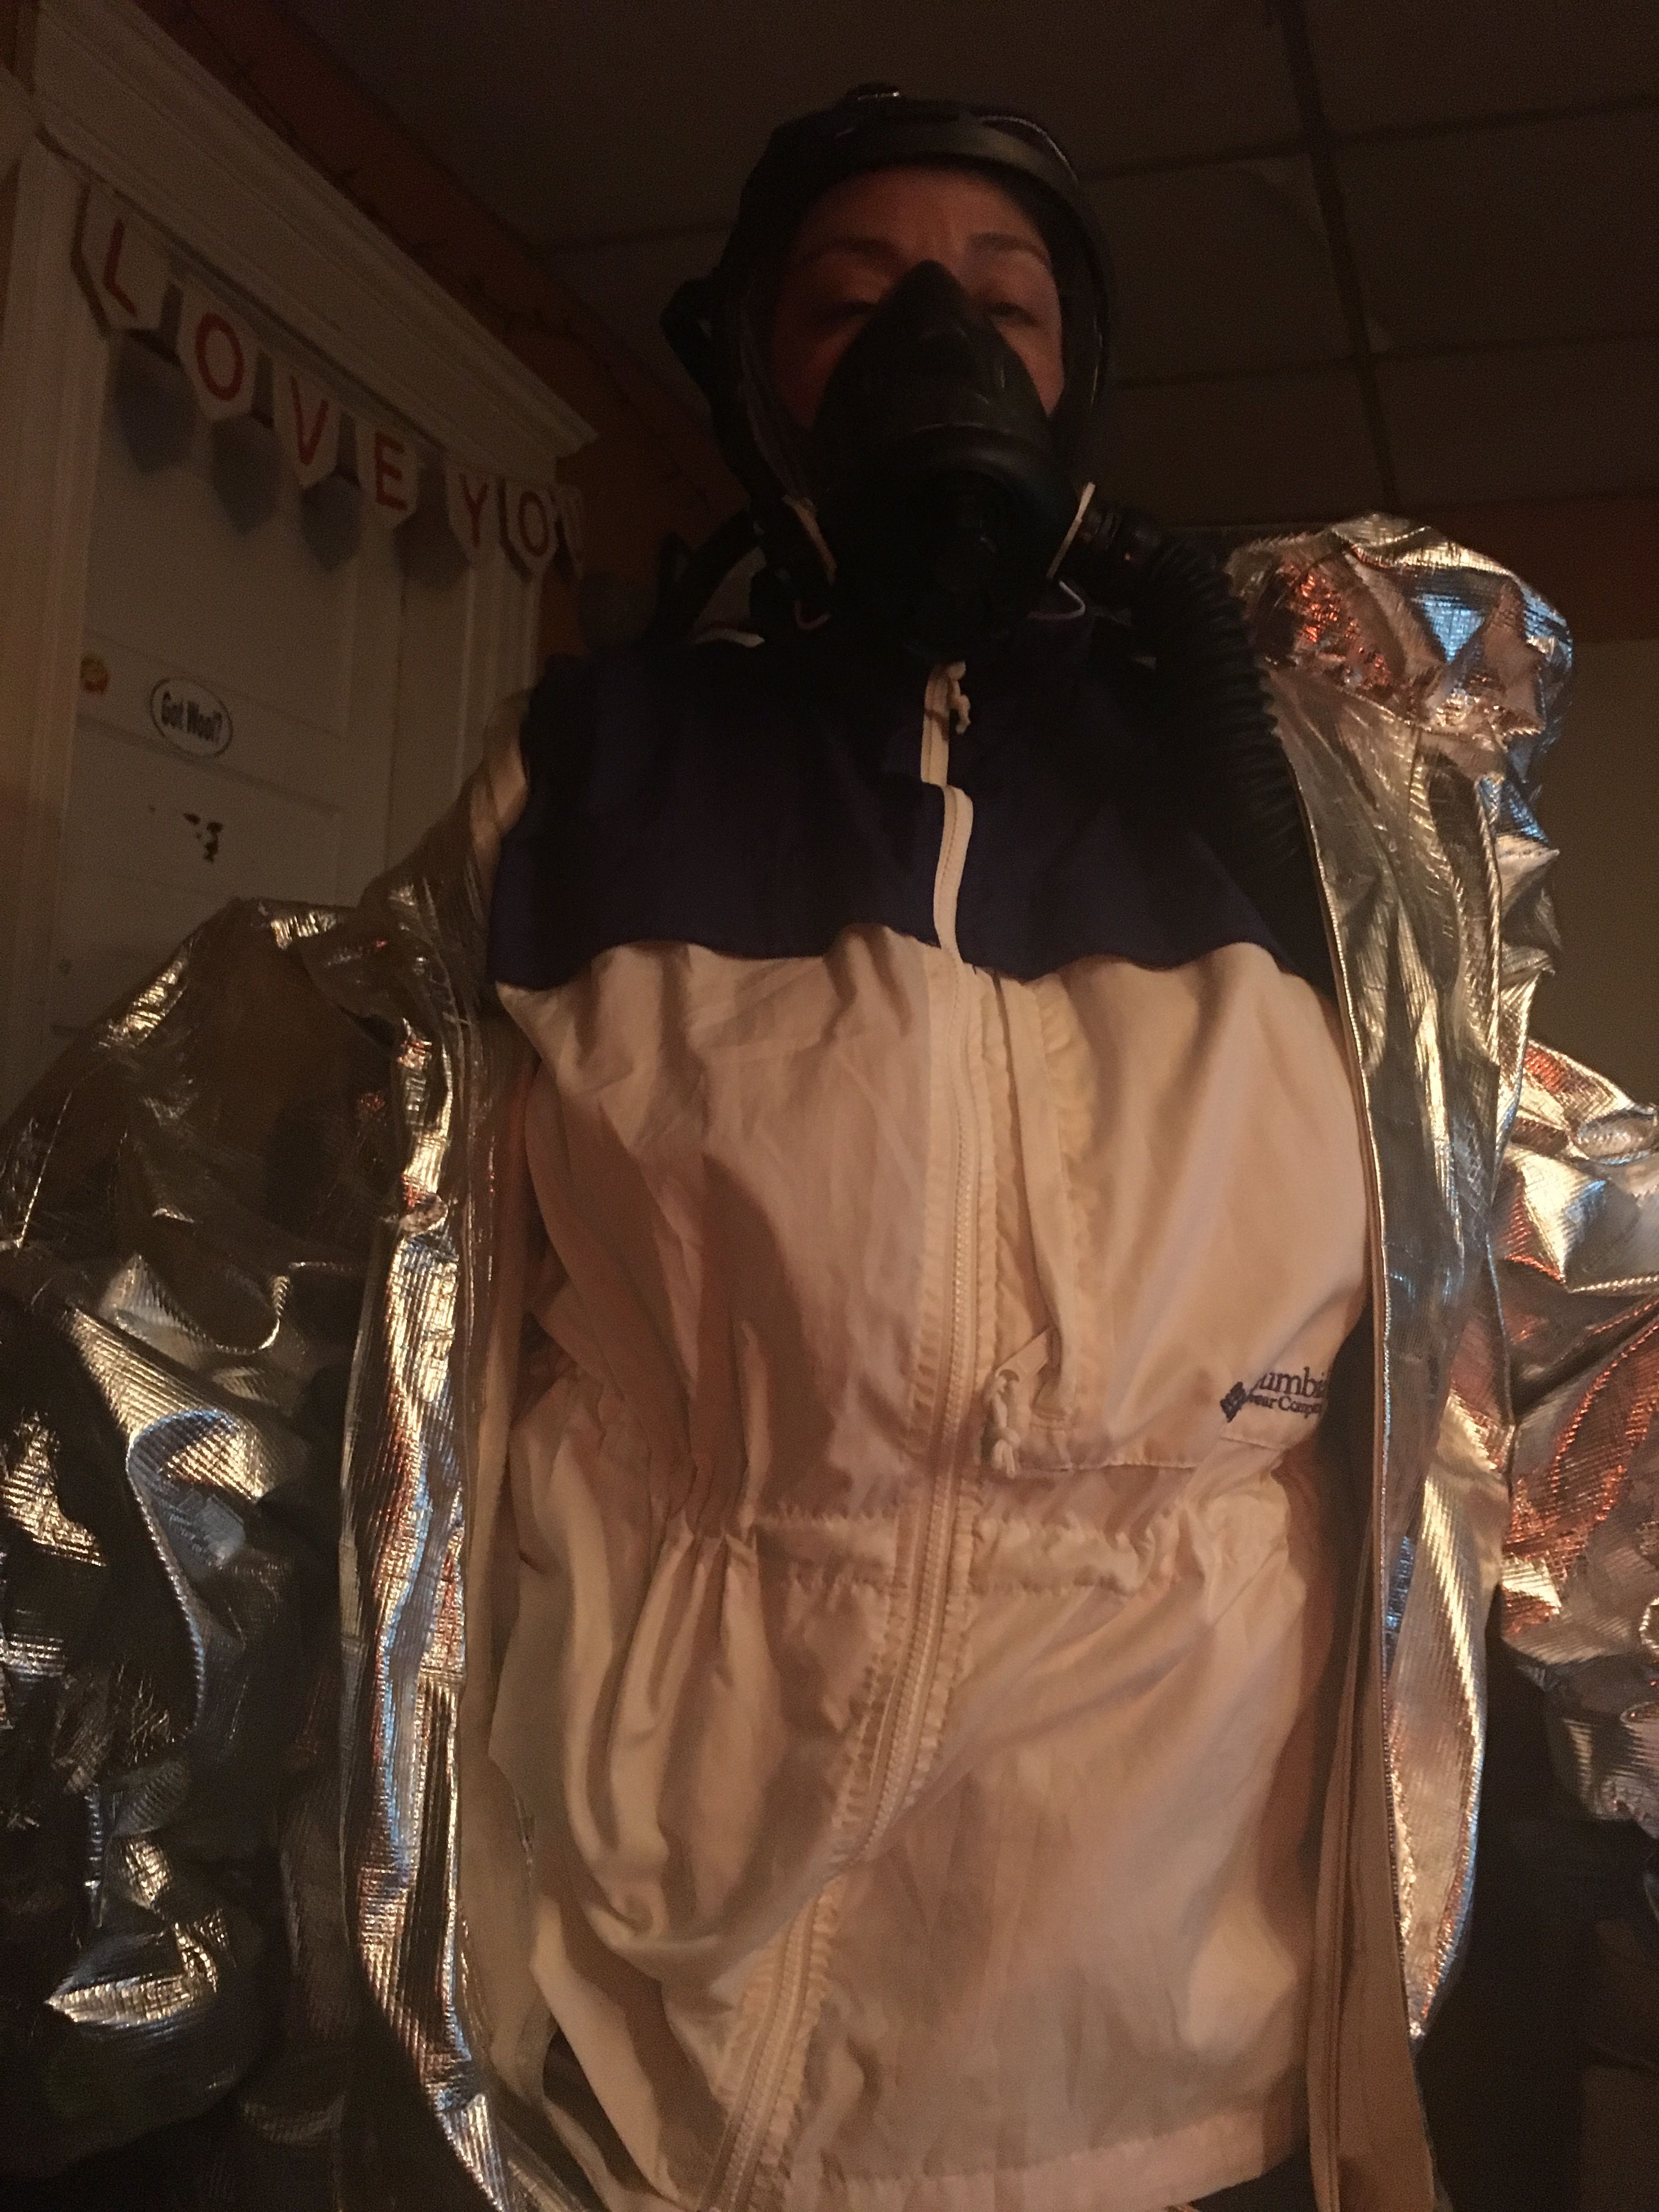 Columbia packable rainsuit under an aluminized hazmat suit